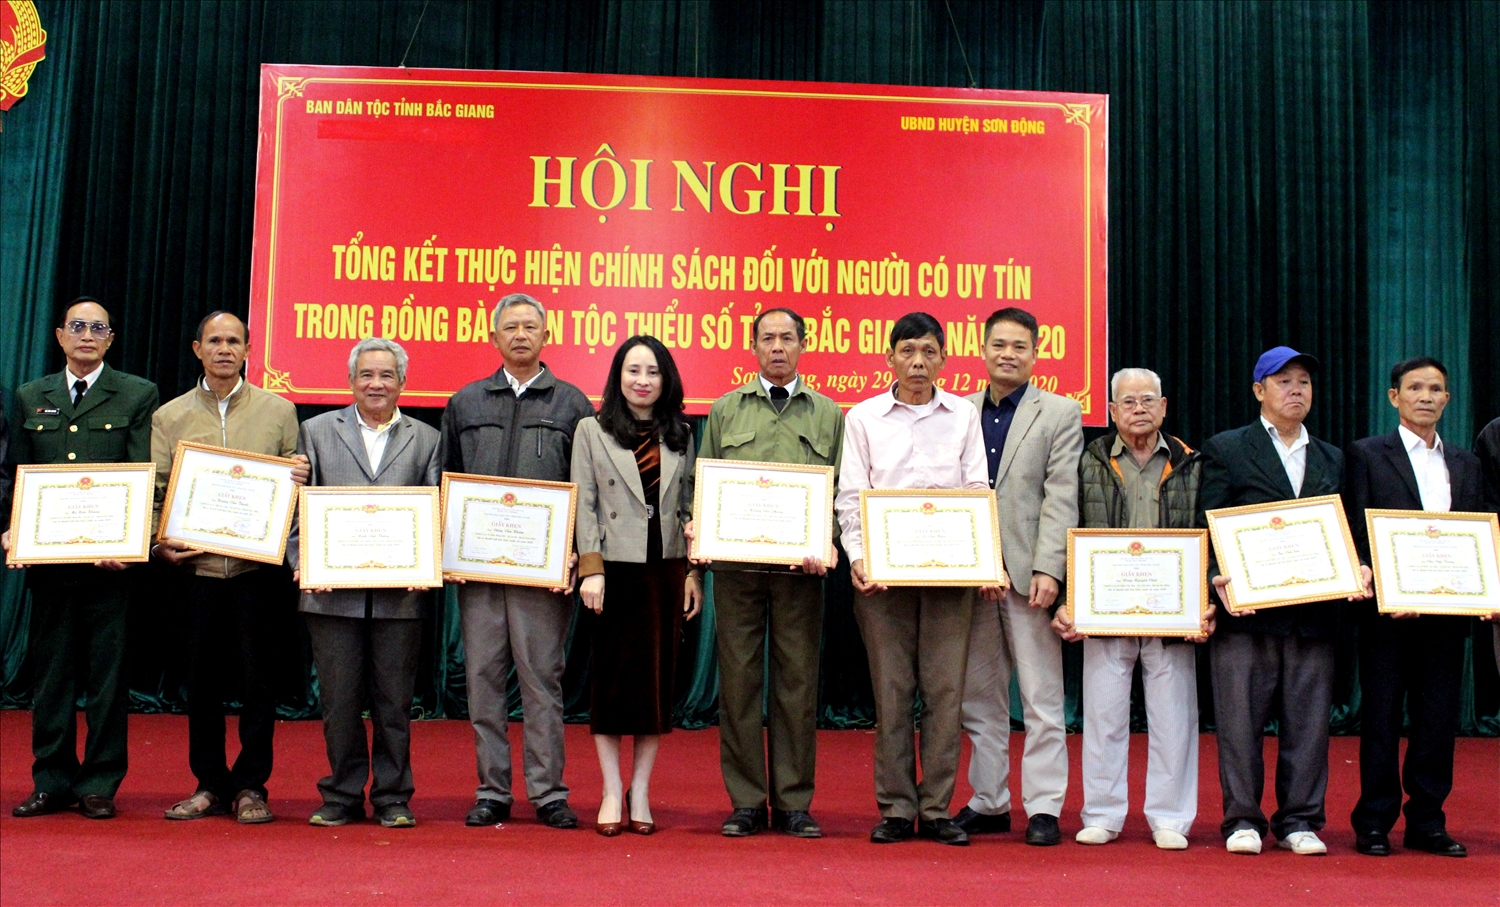 Đại diện lãnh đạo Ban Dân tộc tỉnh Bắc Giang cùng Phó Chủ tịch UBND huyện Sơn Động tặng Giấy khen cho Người uy tín tiêu biểu trên địa bàn huyện